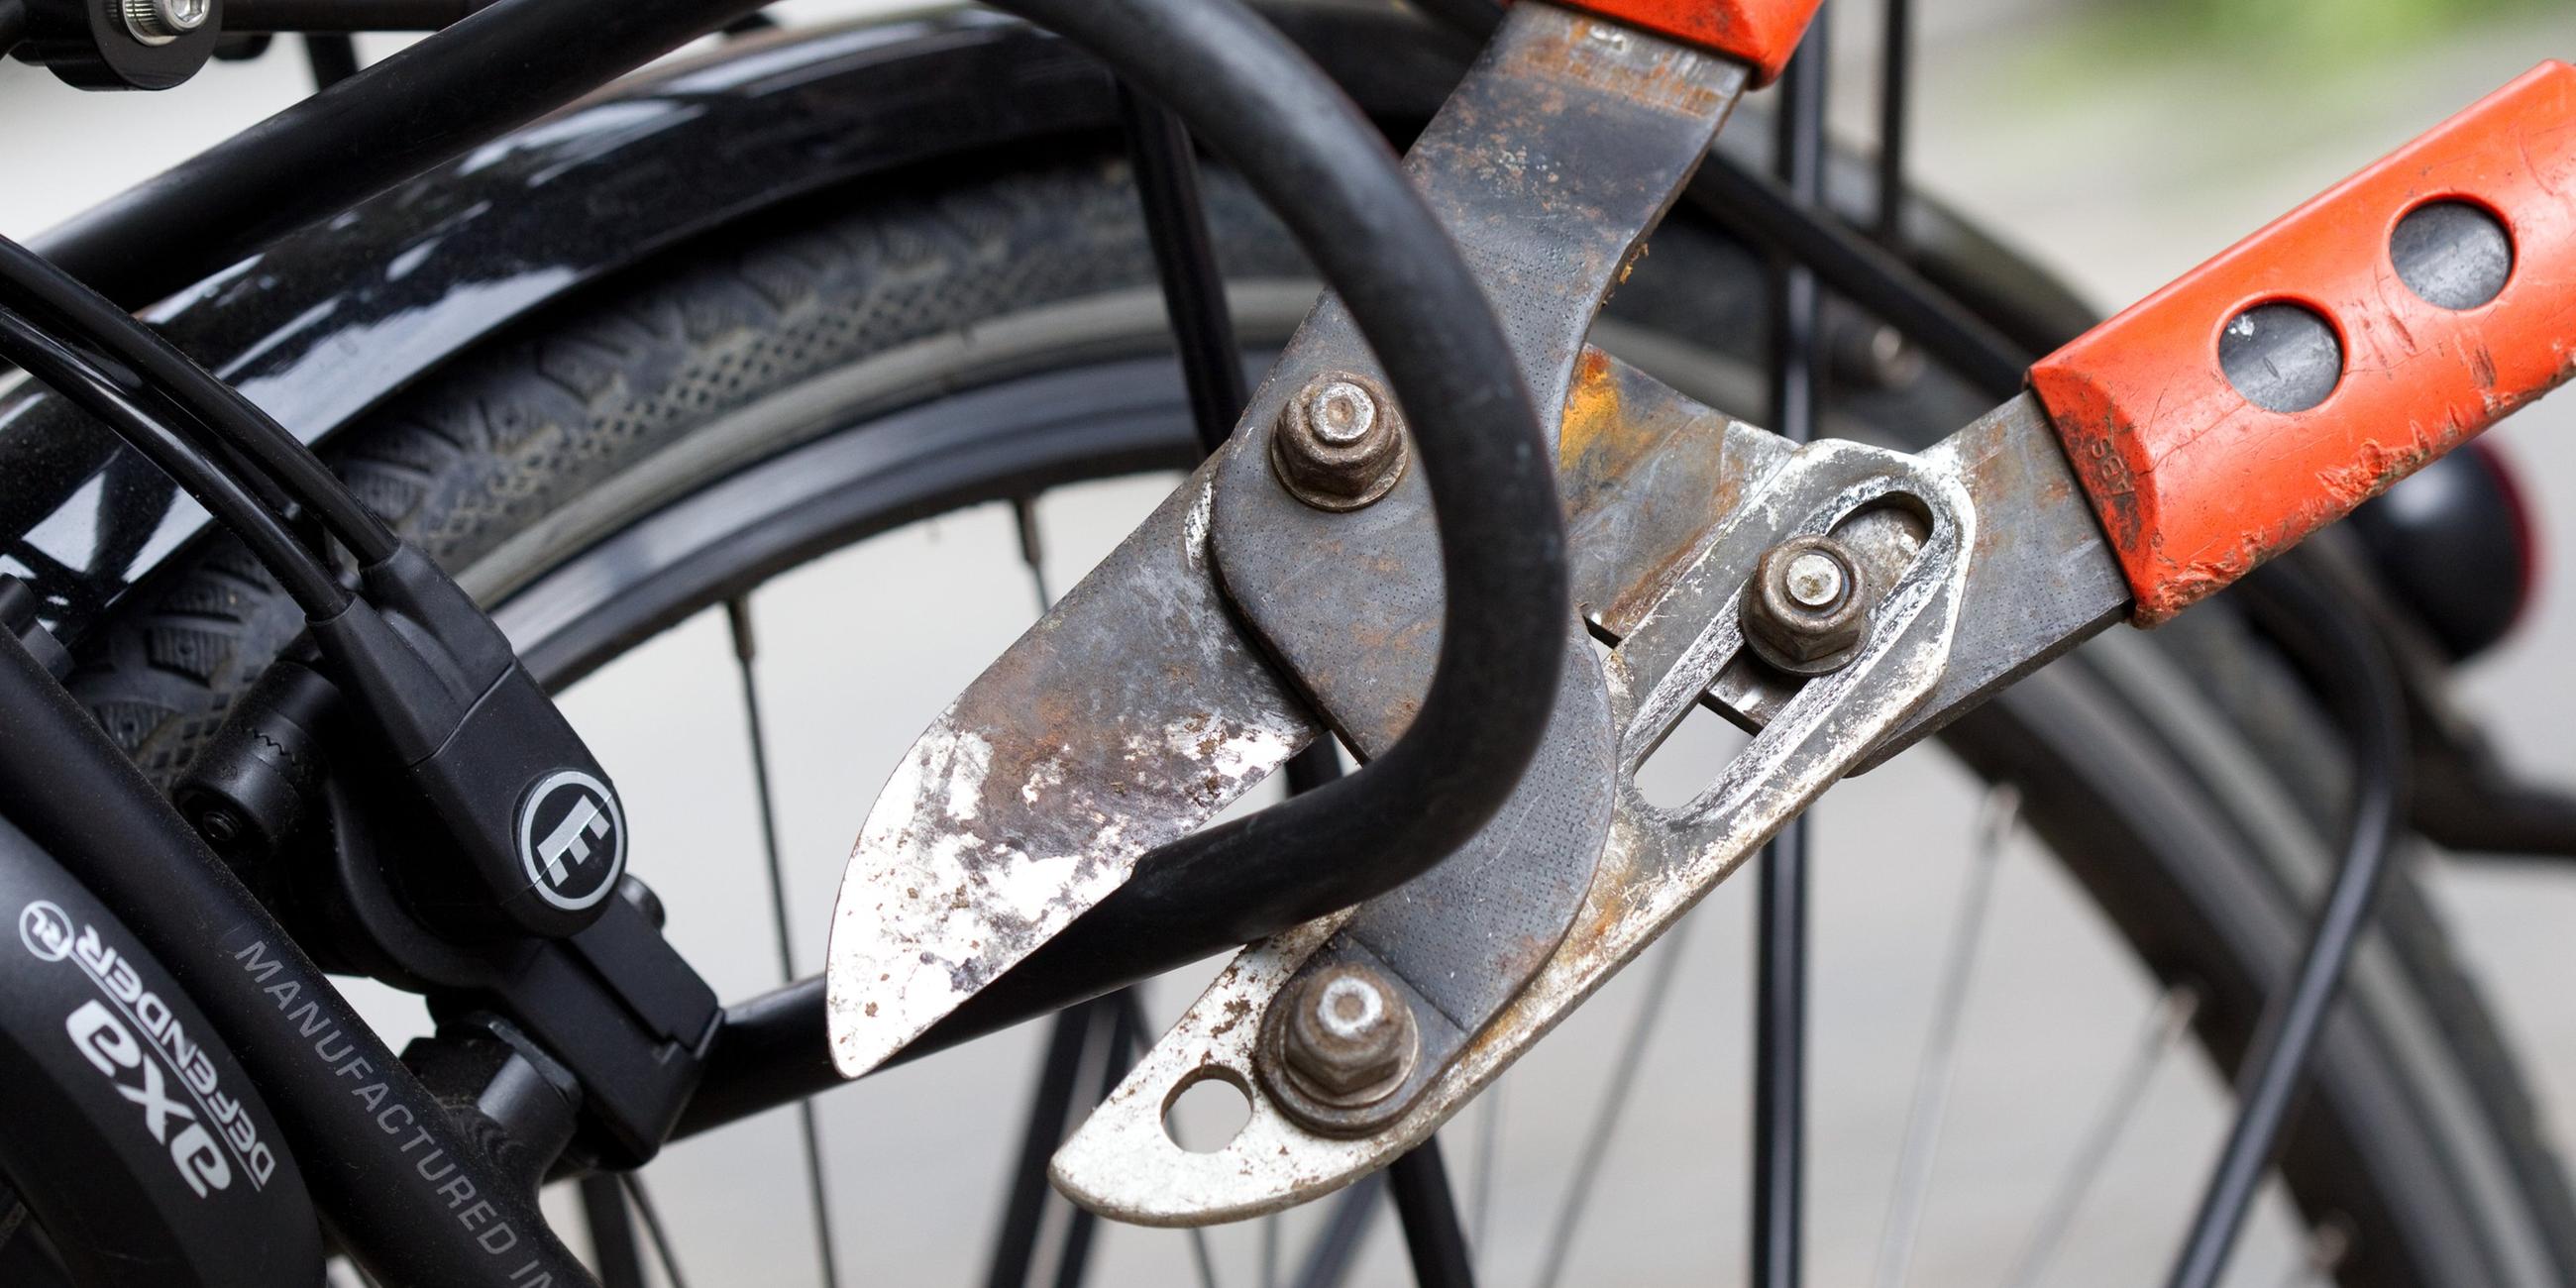 Ein Bolzenschneider wird verwendet, um ein Fahrradschloss aufzubrechen.